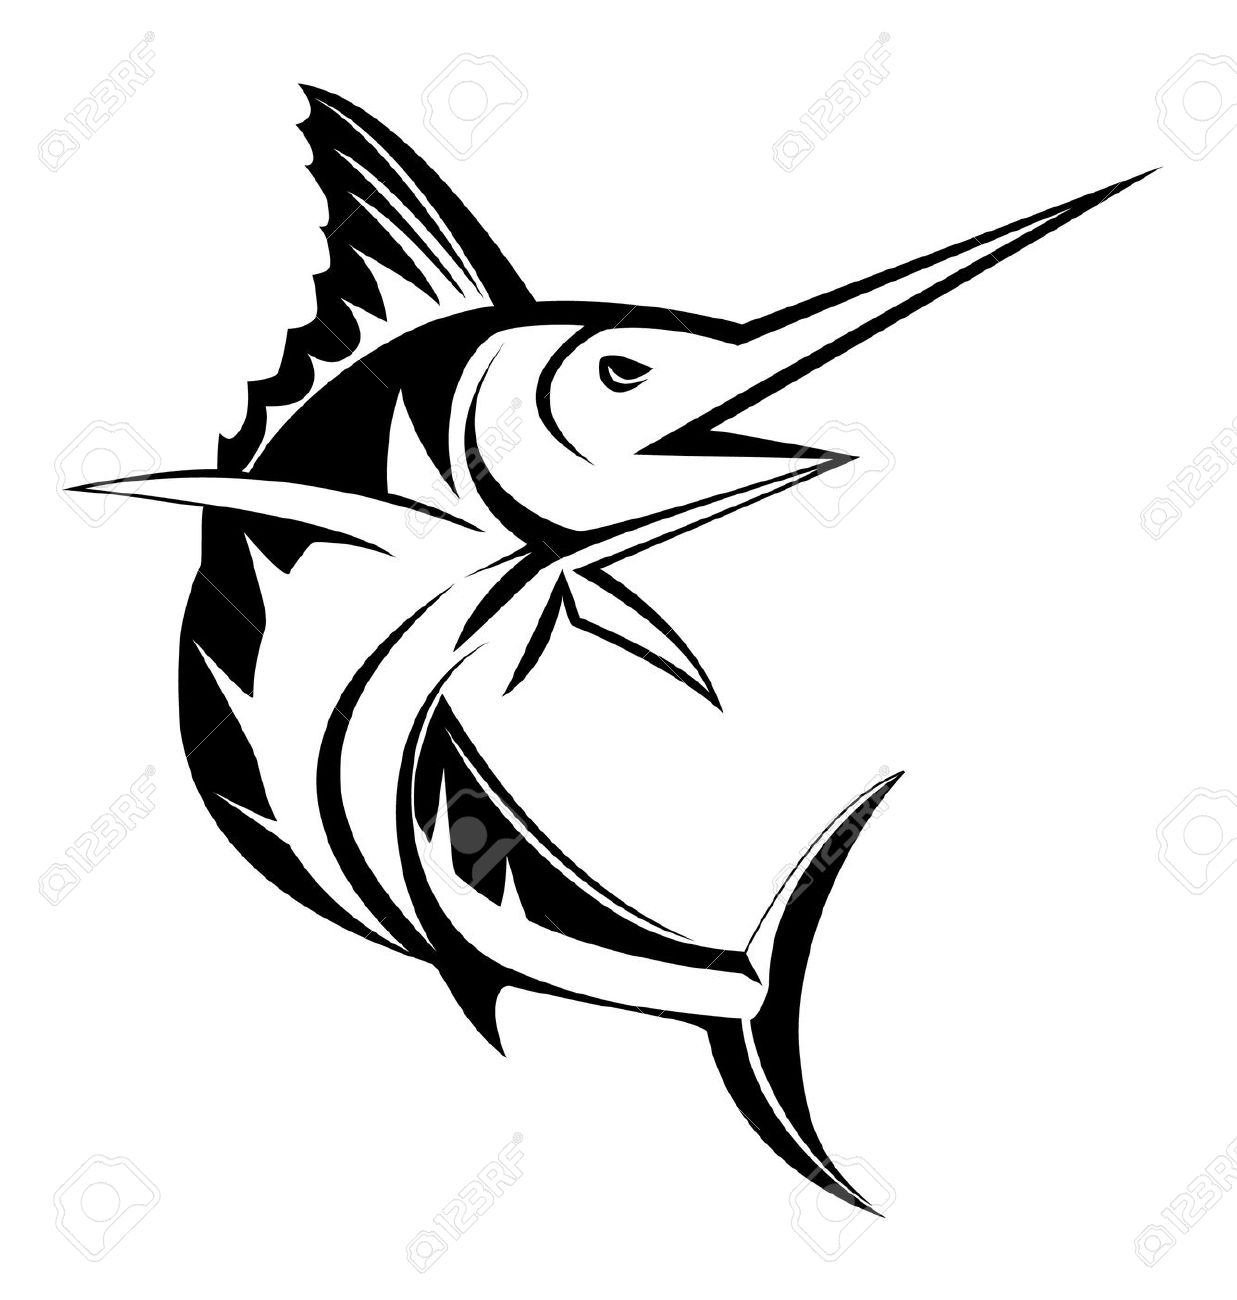 sailfish: Sailfish jumping ou